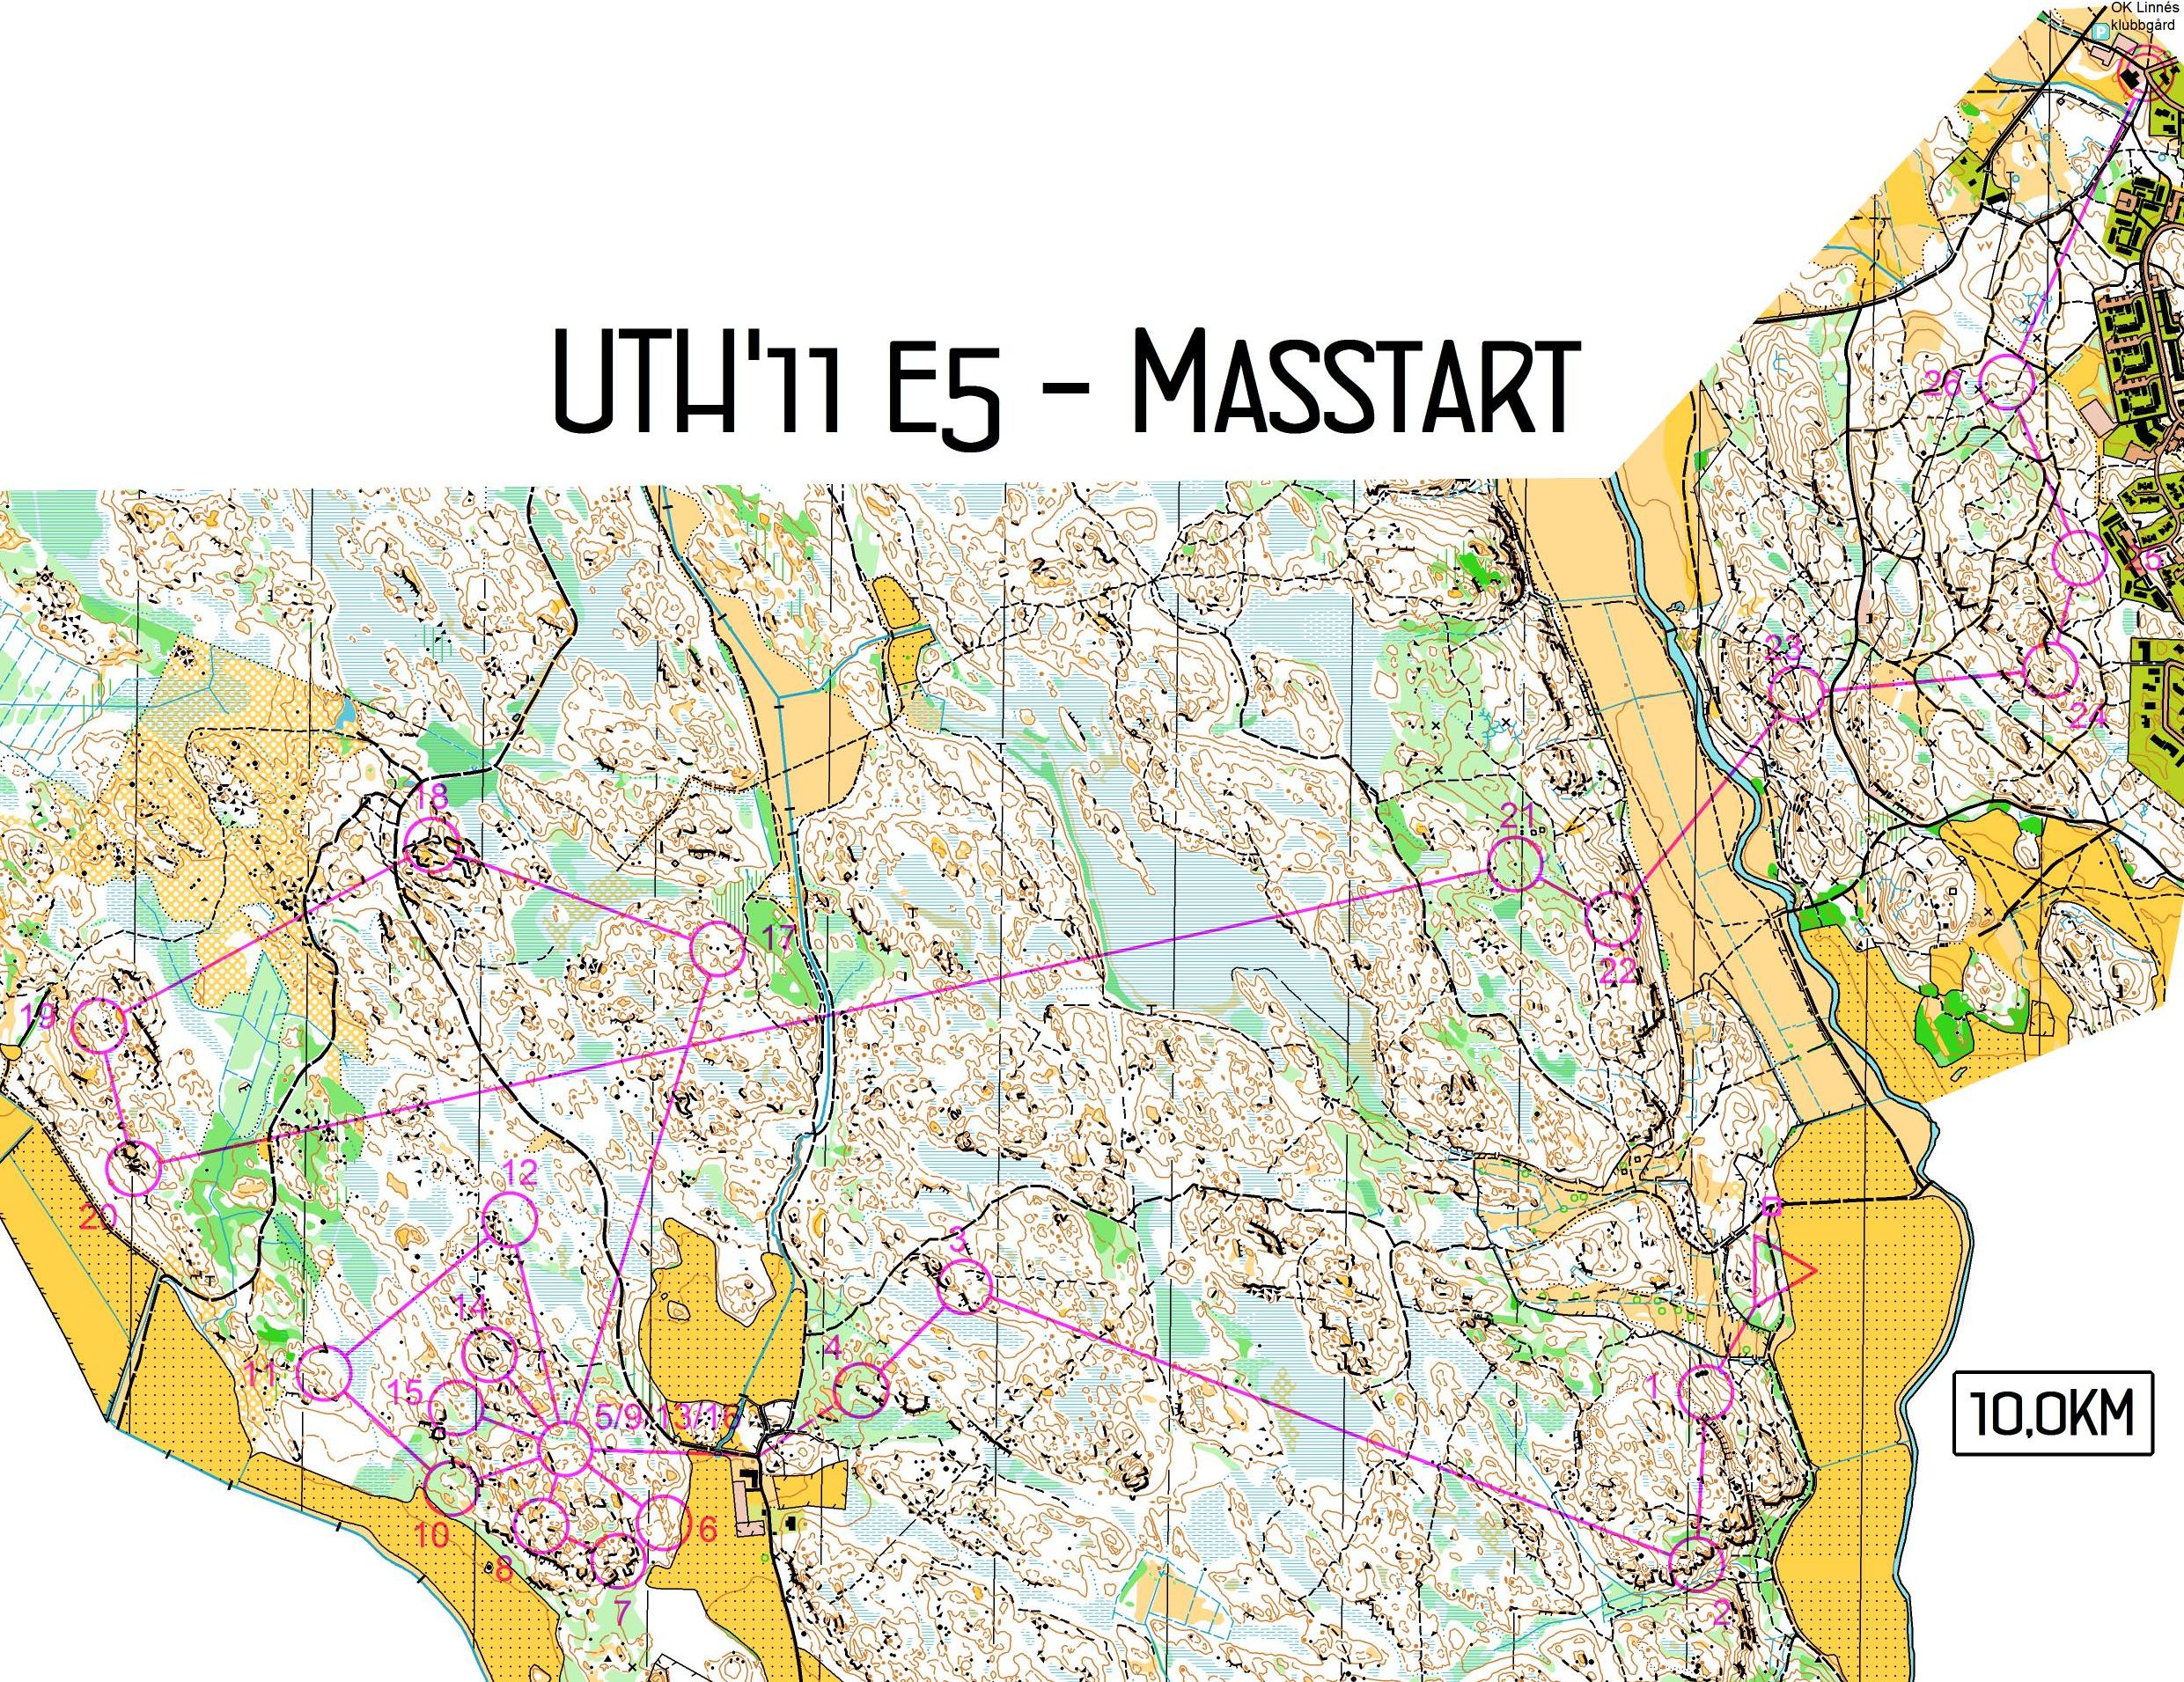 UTH, Masstart, E5 (11.12.2011)